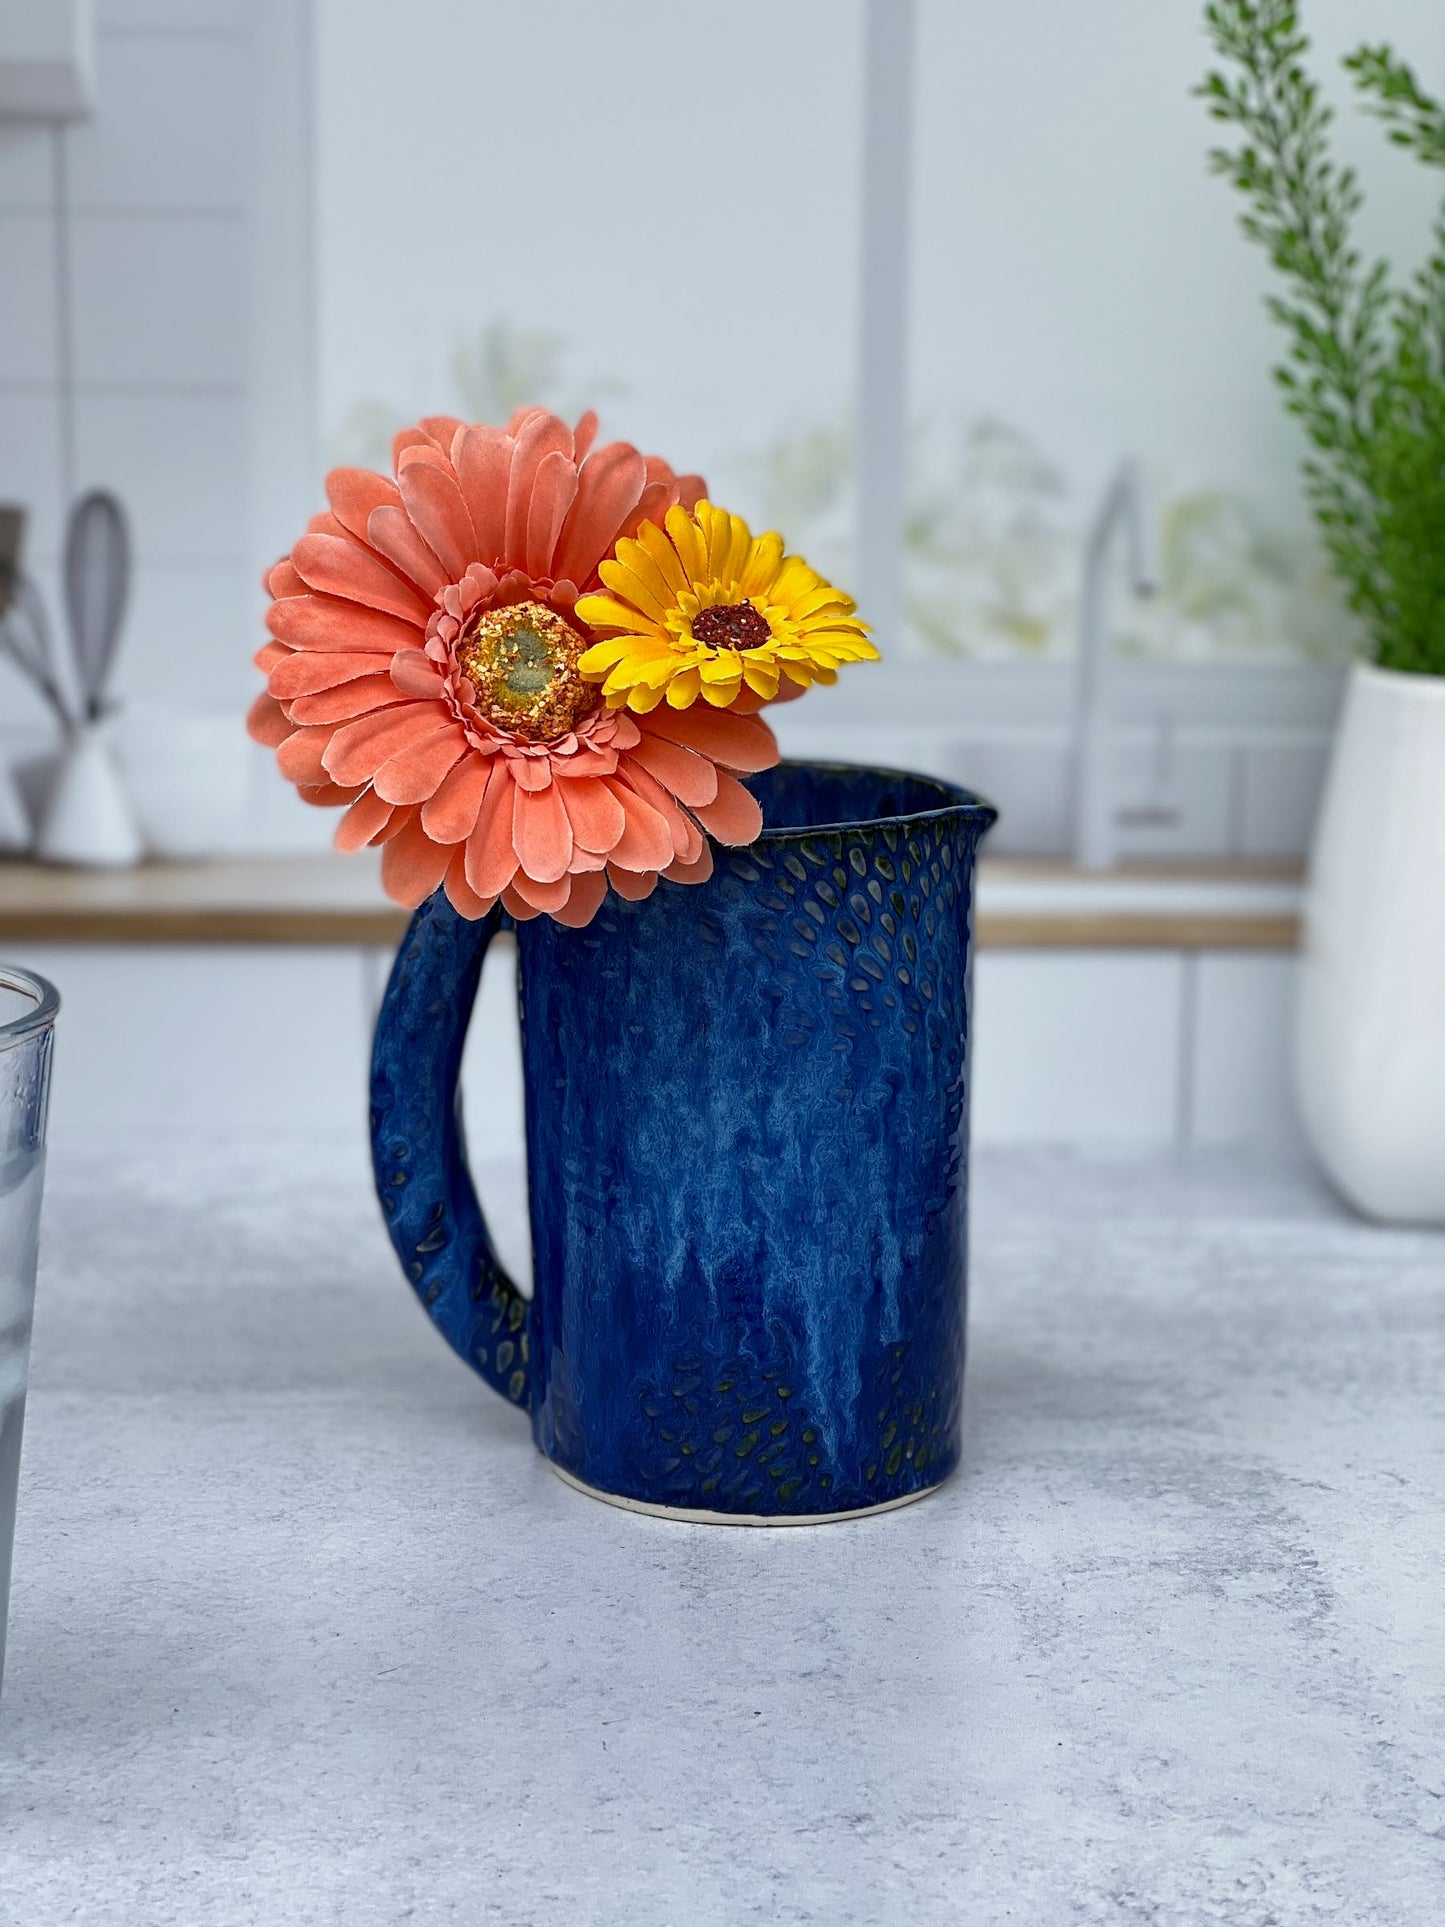 Slab-built Blue Textured Pitcher or Vase